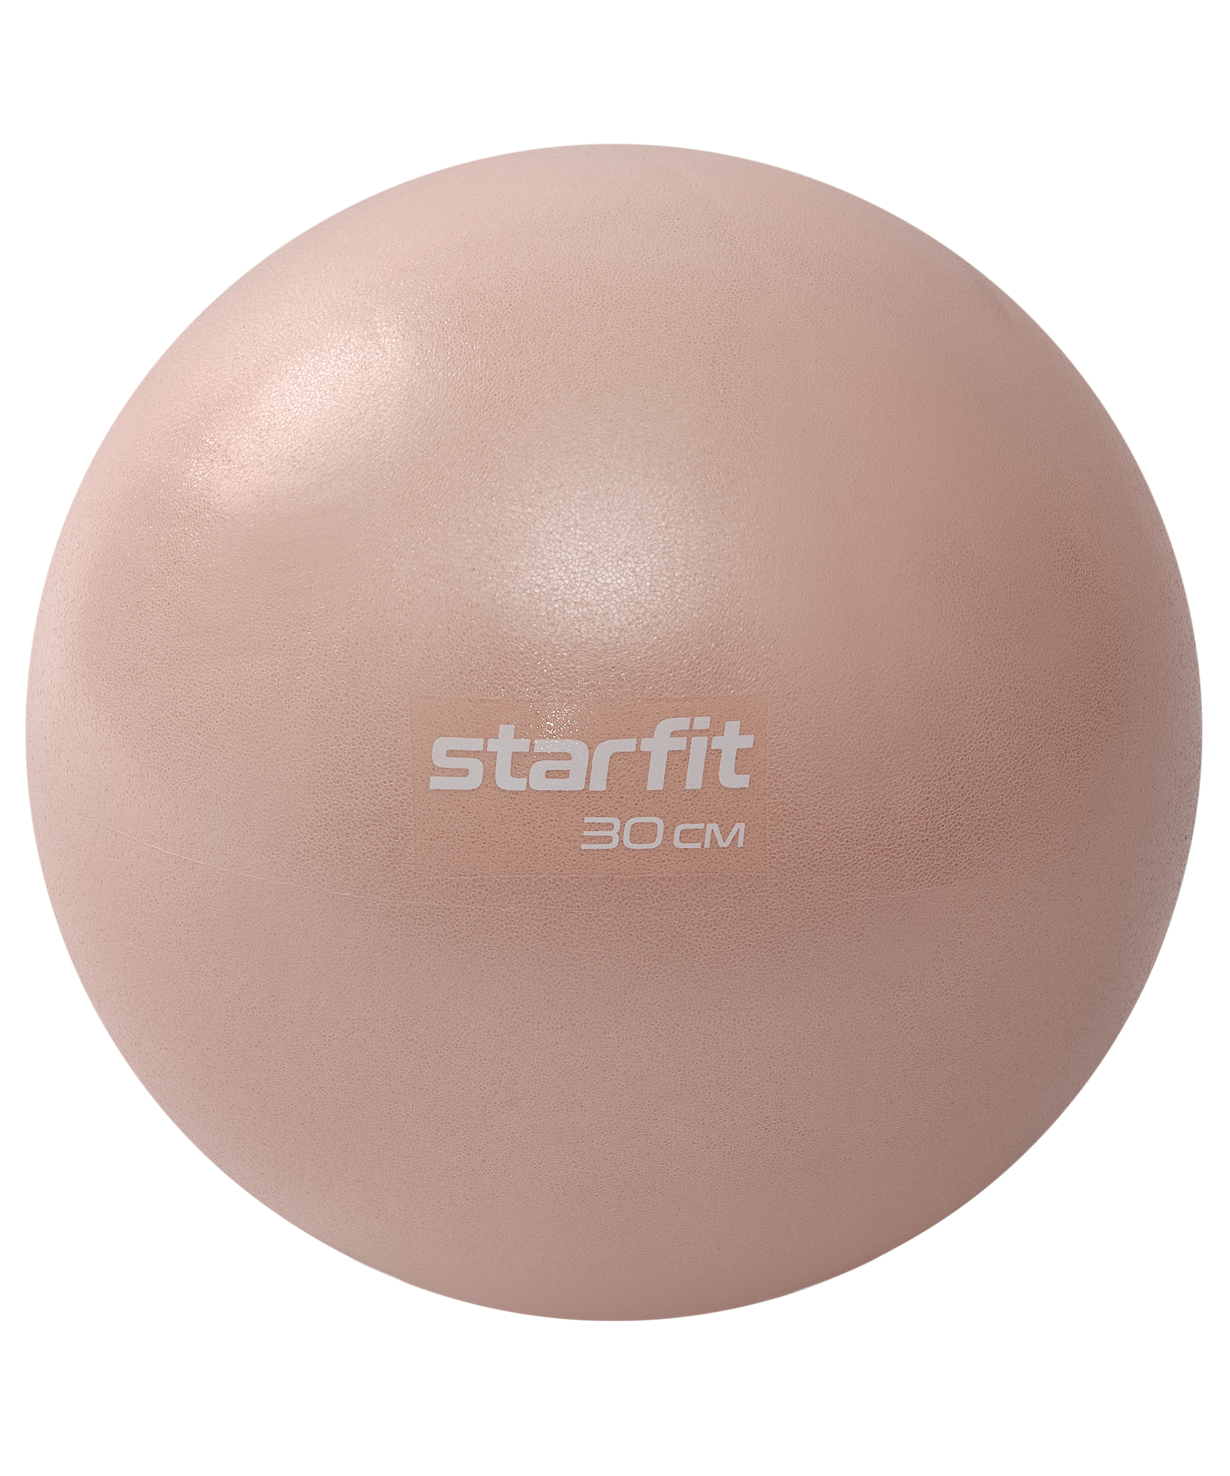 Мяч для пилатеса Starfit Gb-902 30 см, персиковый